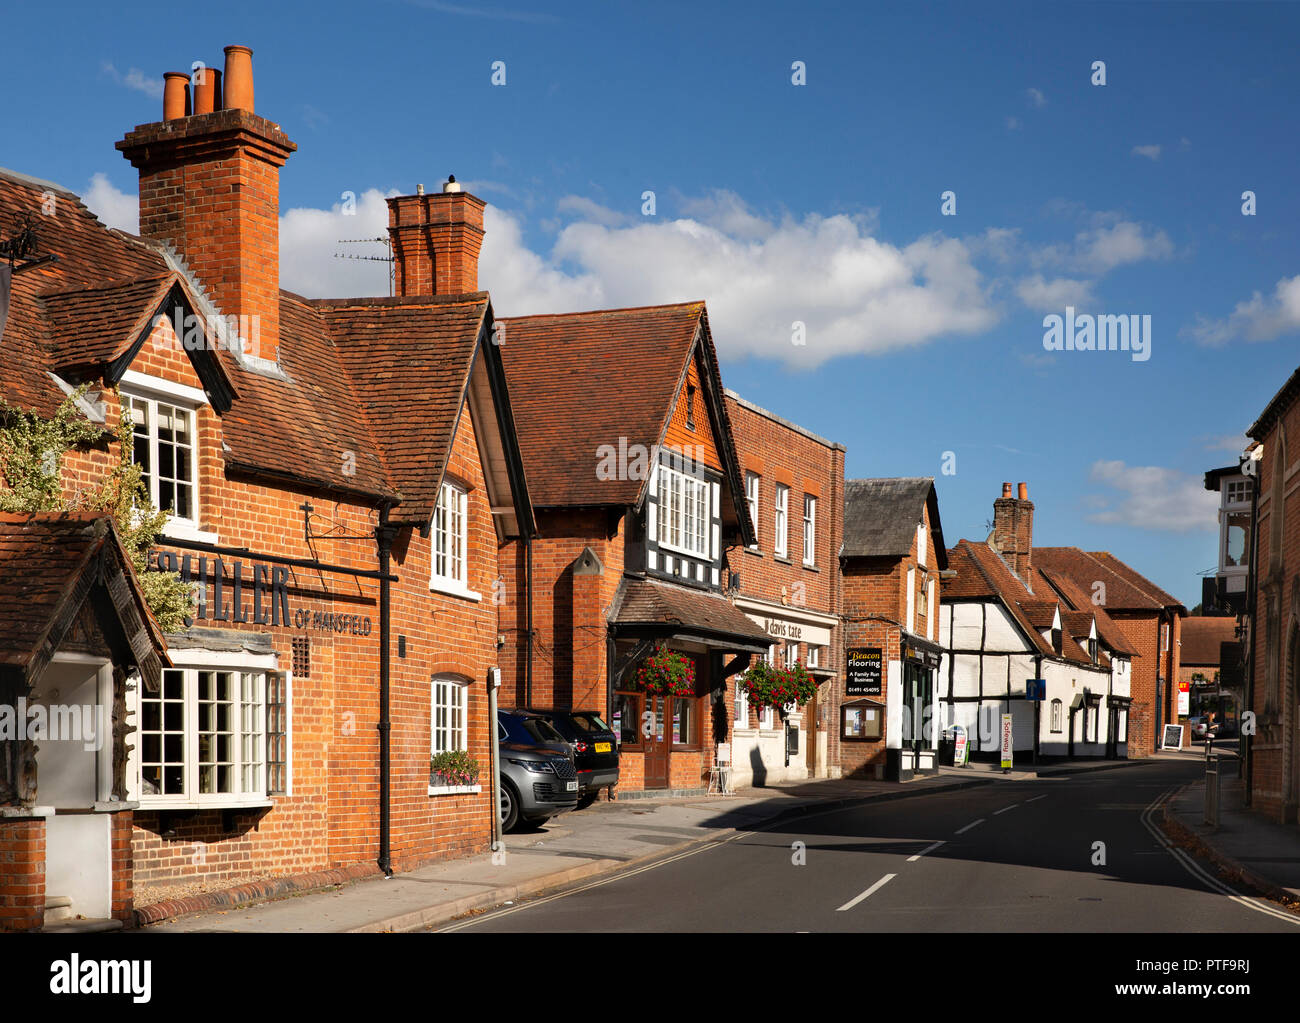 England, Berkshire, Goring an der Themse, High Street, Miller von Mansfield Pub und Geschäfte Stockfoto